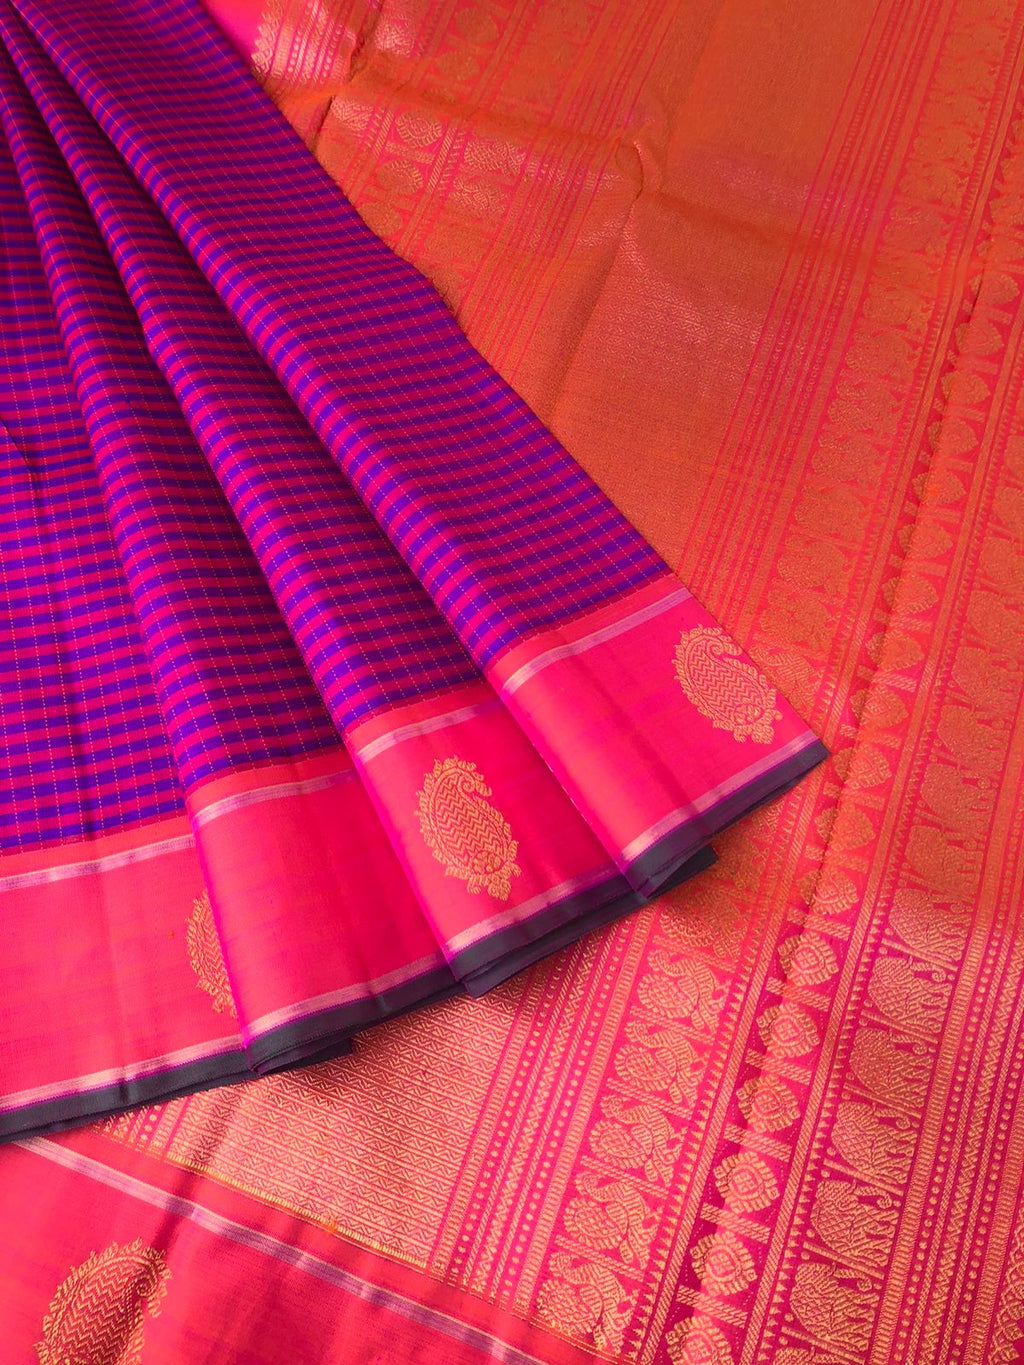 Kattams on Kanchivarams - purple pink pulliyan kottan kattam with paisley woven buttas